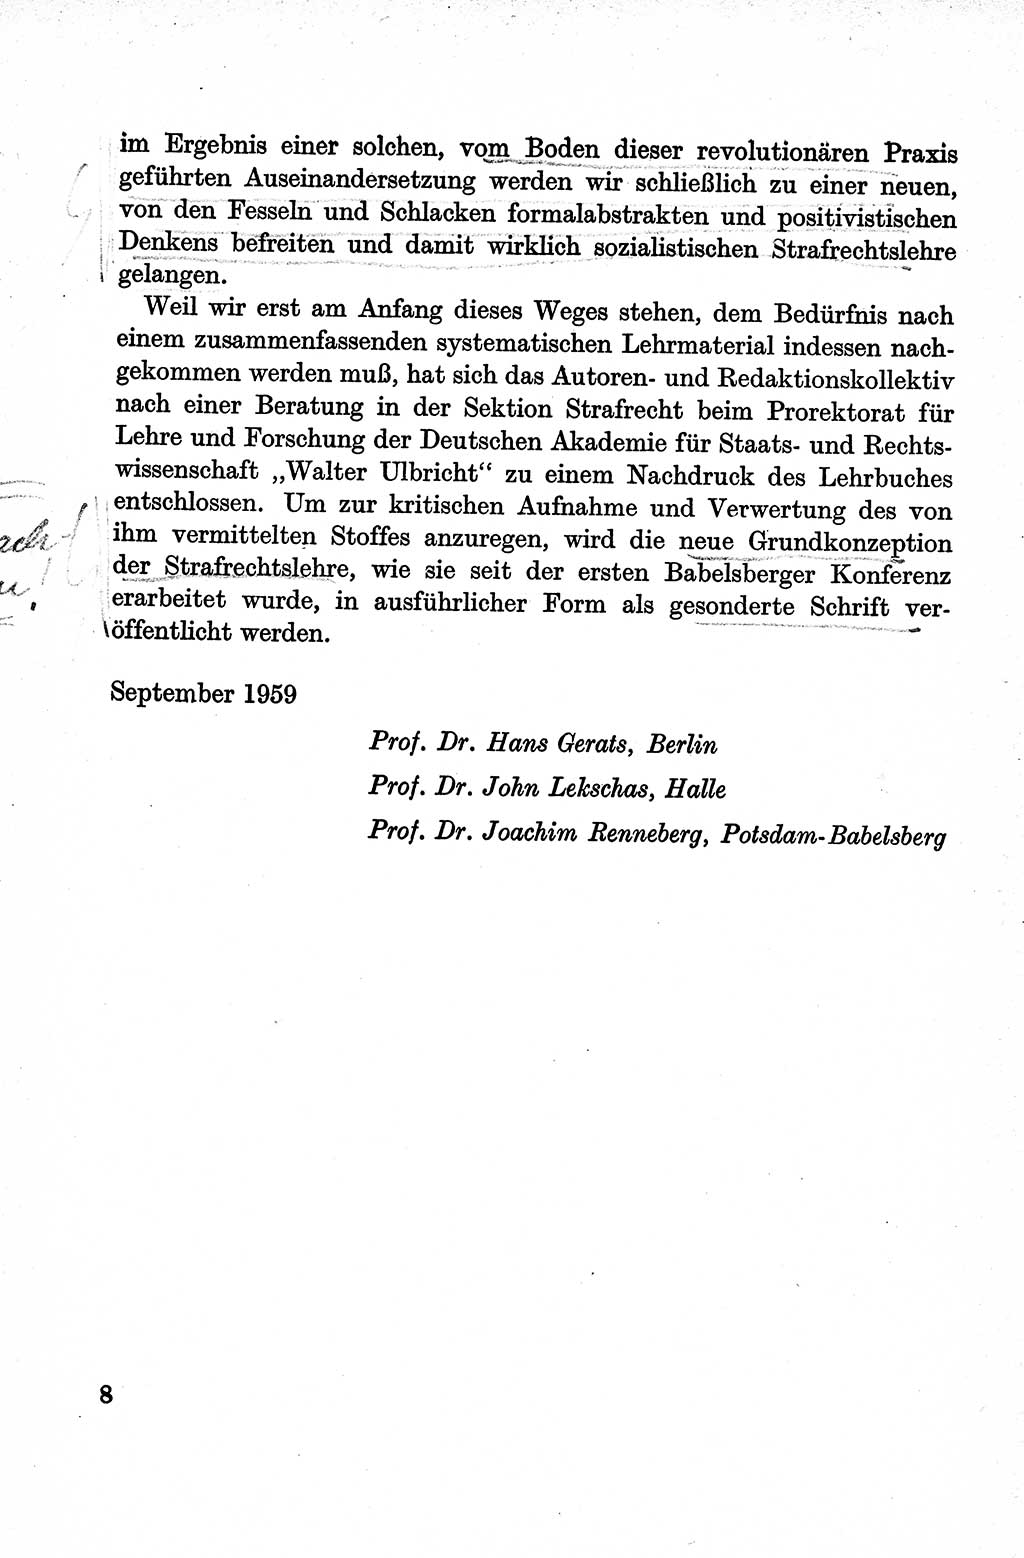 Lehrbuch des Strafrechts der Deutschen Demokratischen Republik (DDR), Allgemeiner Teil 1959, Seite 8 (Lb. Strafr. DDR AT 1959, S. 8)